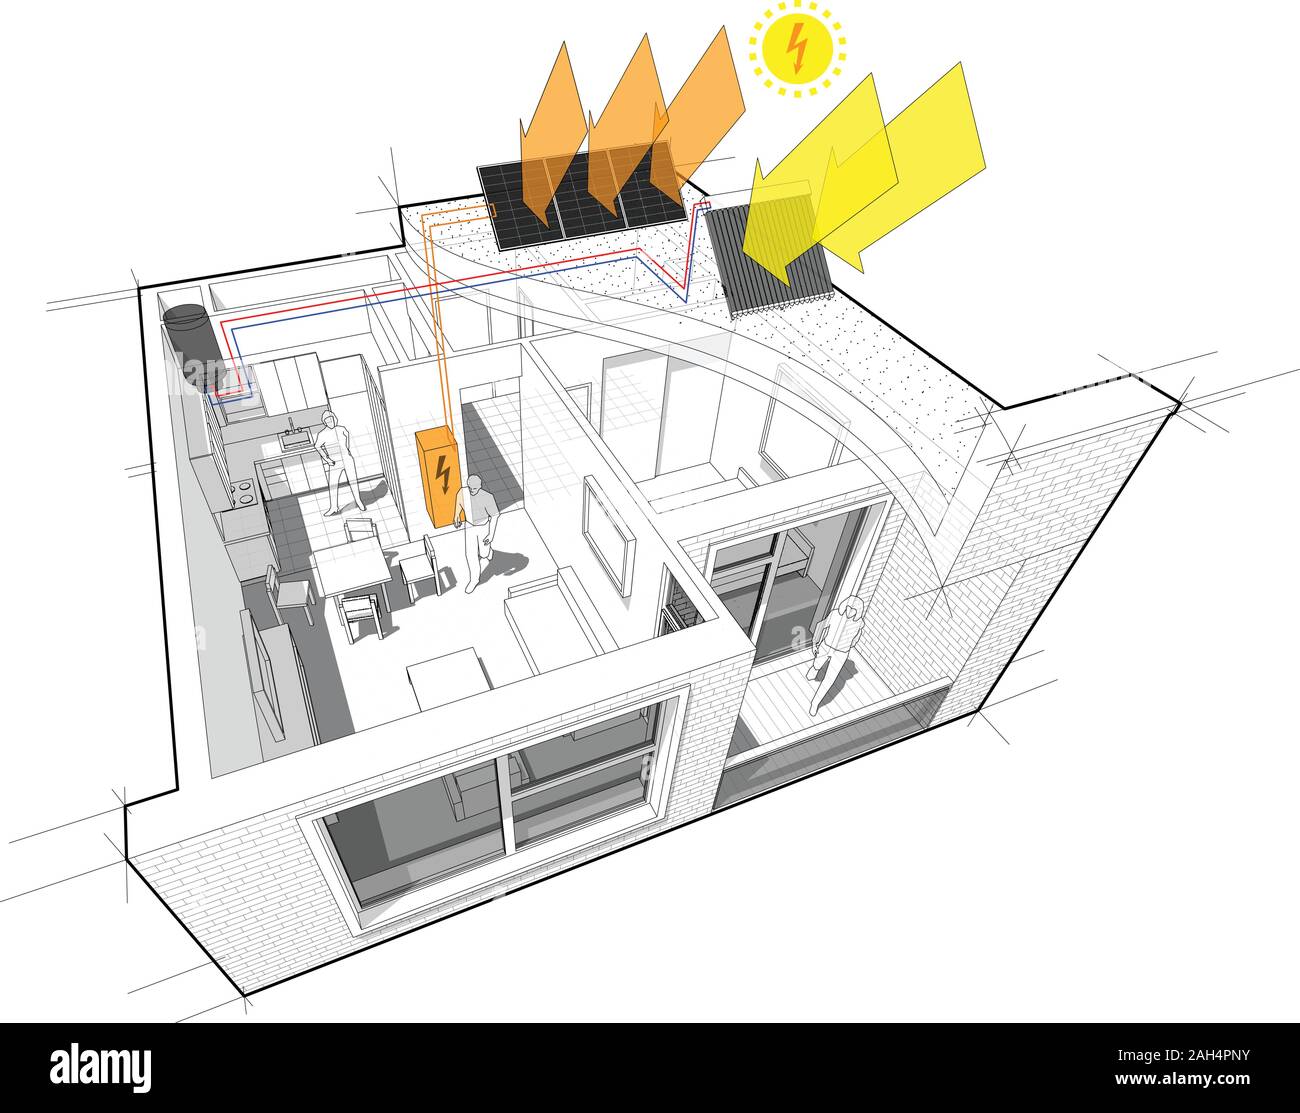 Diagramm für ein Apartment mit einem Schlafzimmer komplett mit zusätzlichen solare Wasser-Heizung-panels und Sonnenkollektoren auf dem Dach eingerichtet als Quelle von El Stock Vektor